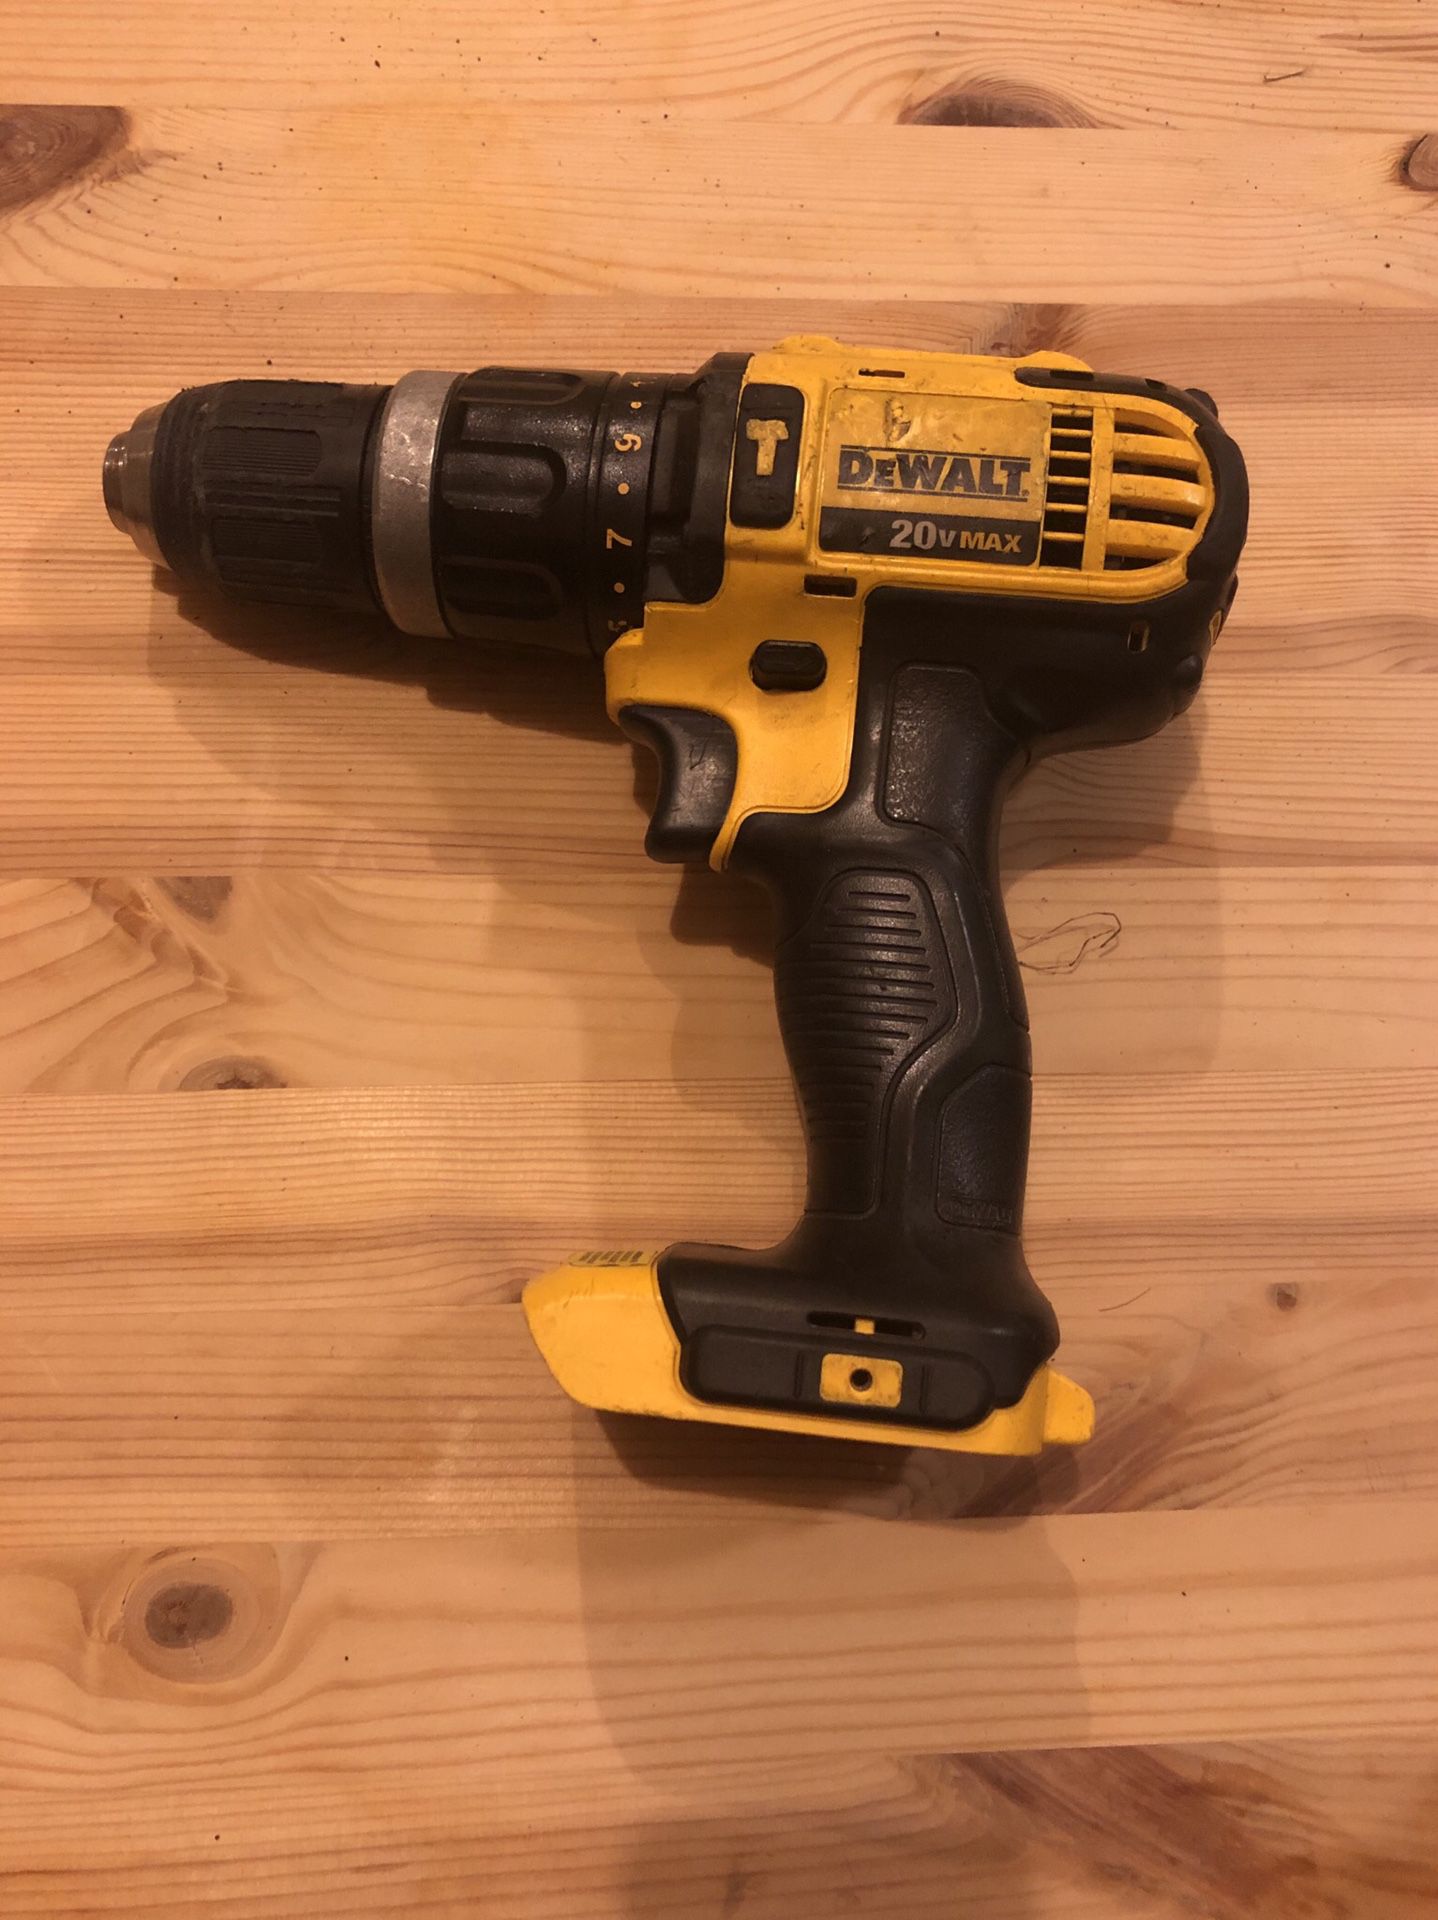 Dewalt 20v max hammer drill $30